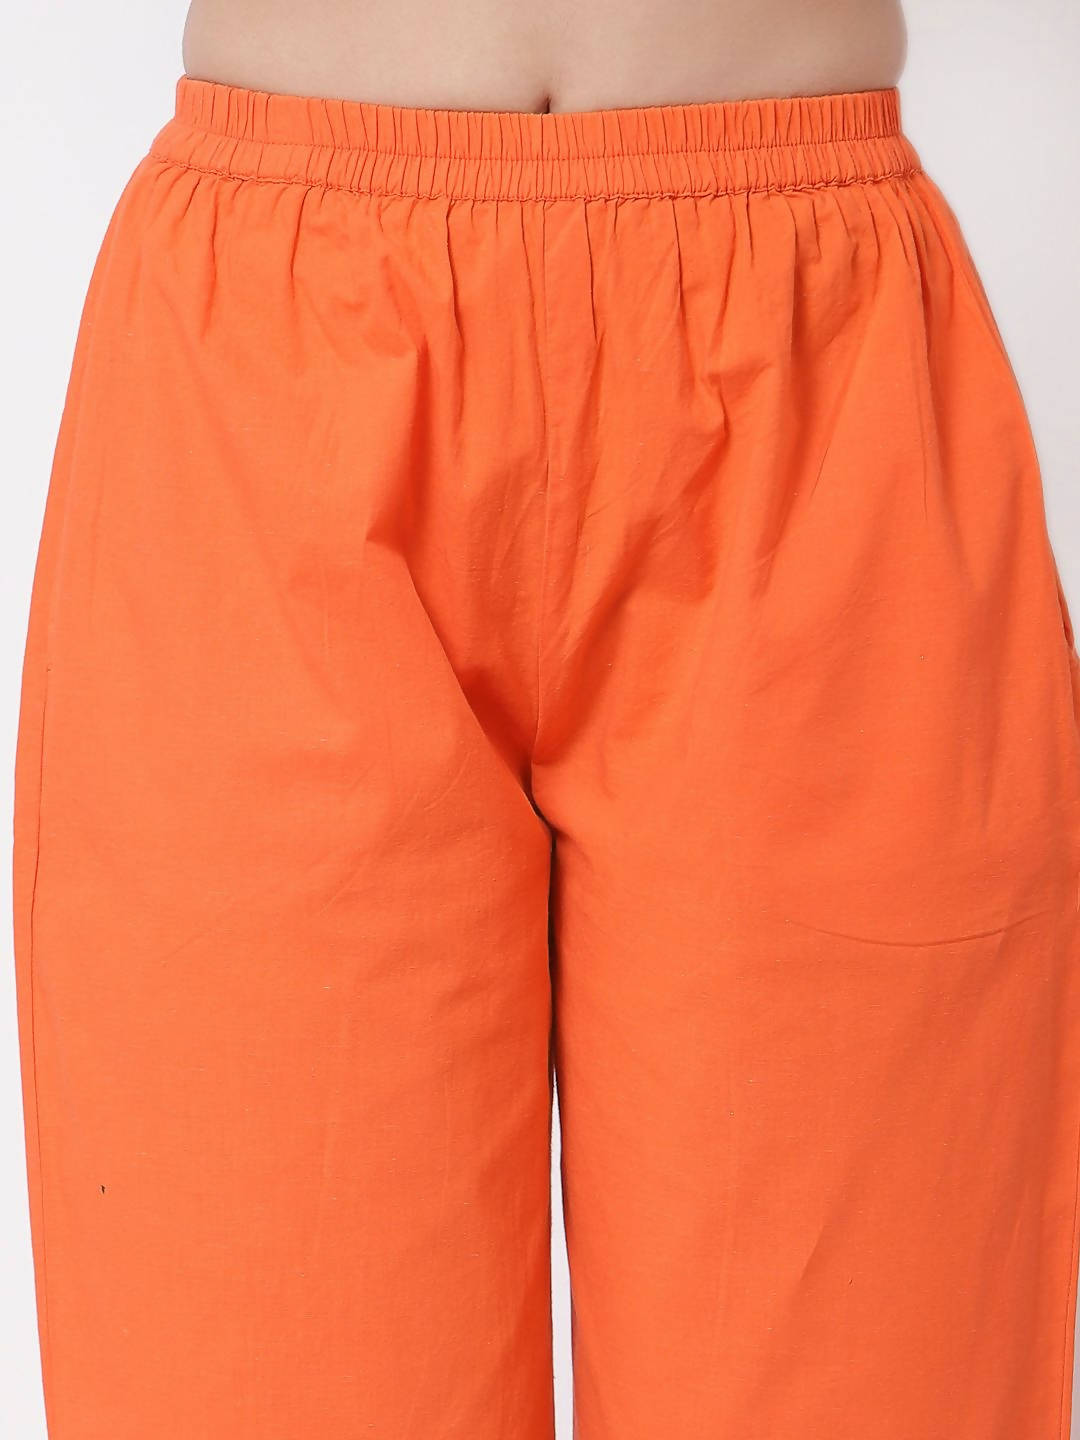 Myshka Orange Solid Cotton 3/4 Sleeve Round Neck Casual Kurta Pant Dupatta Set